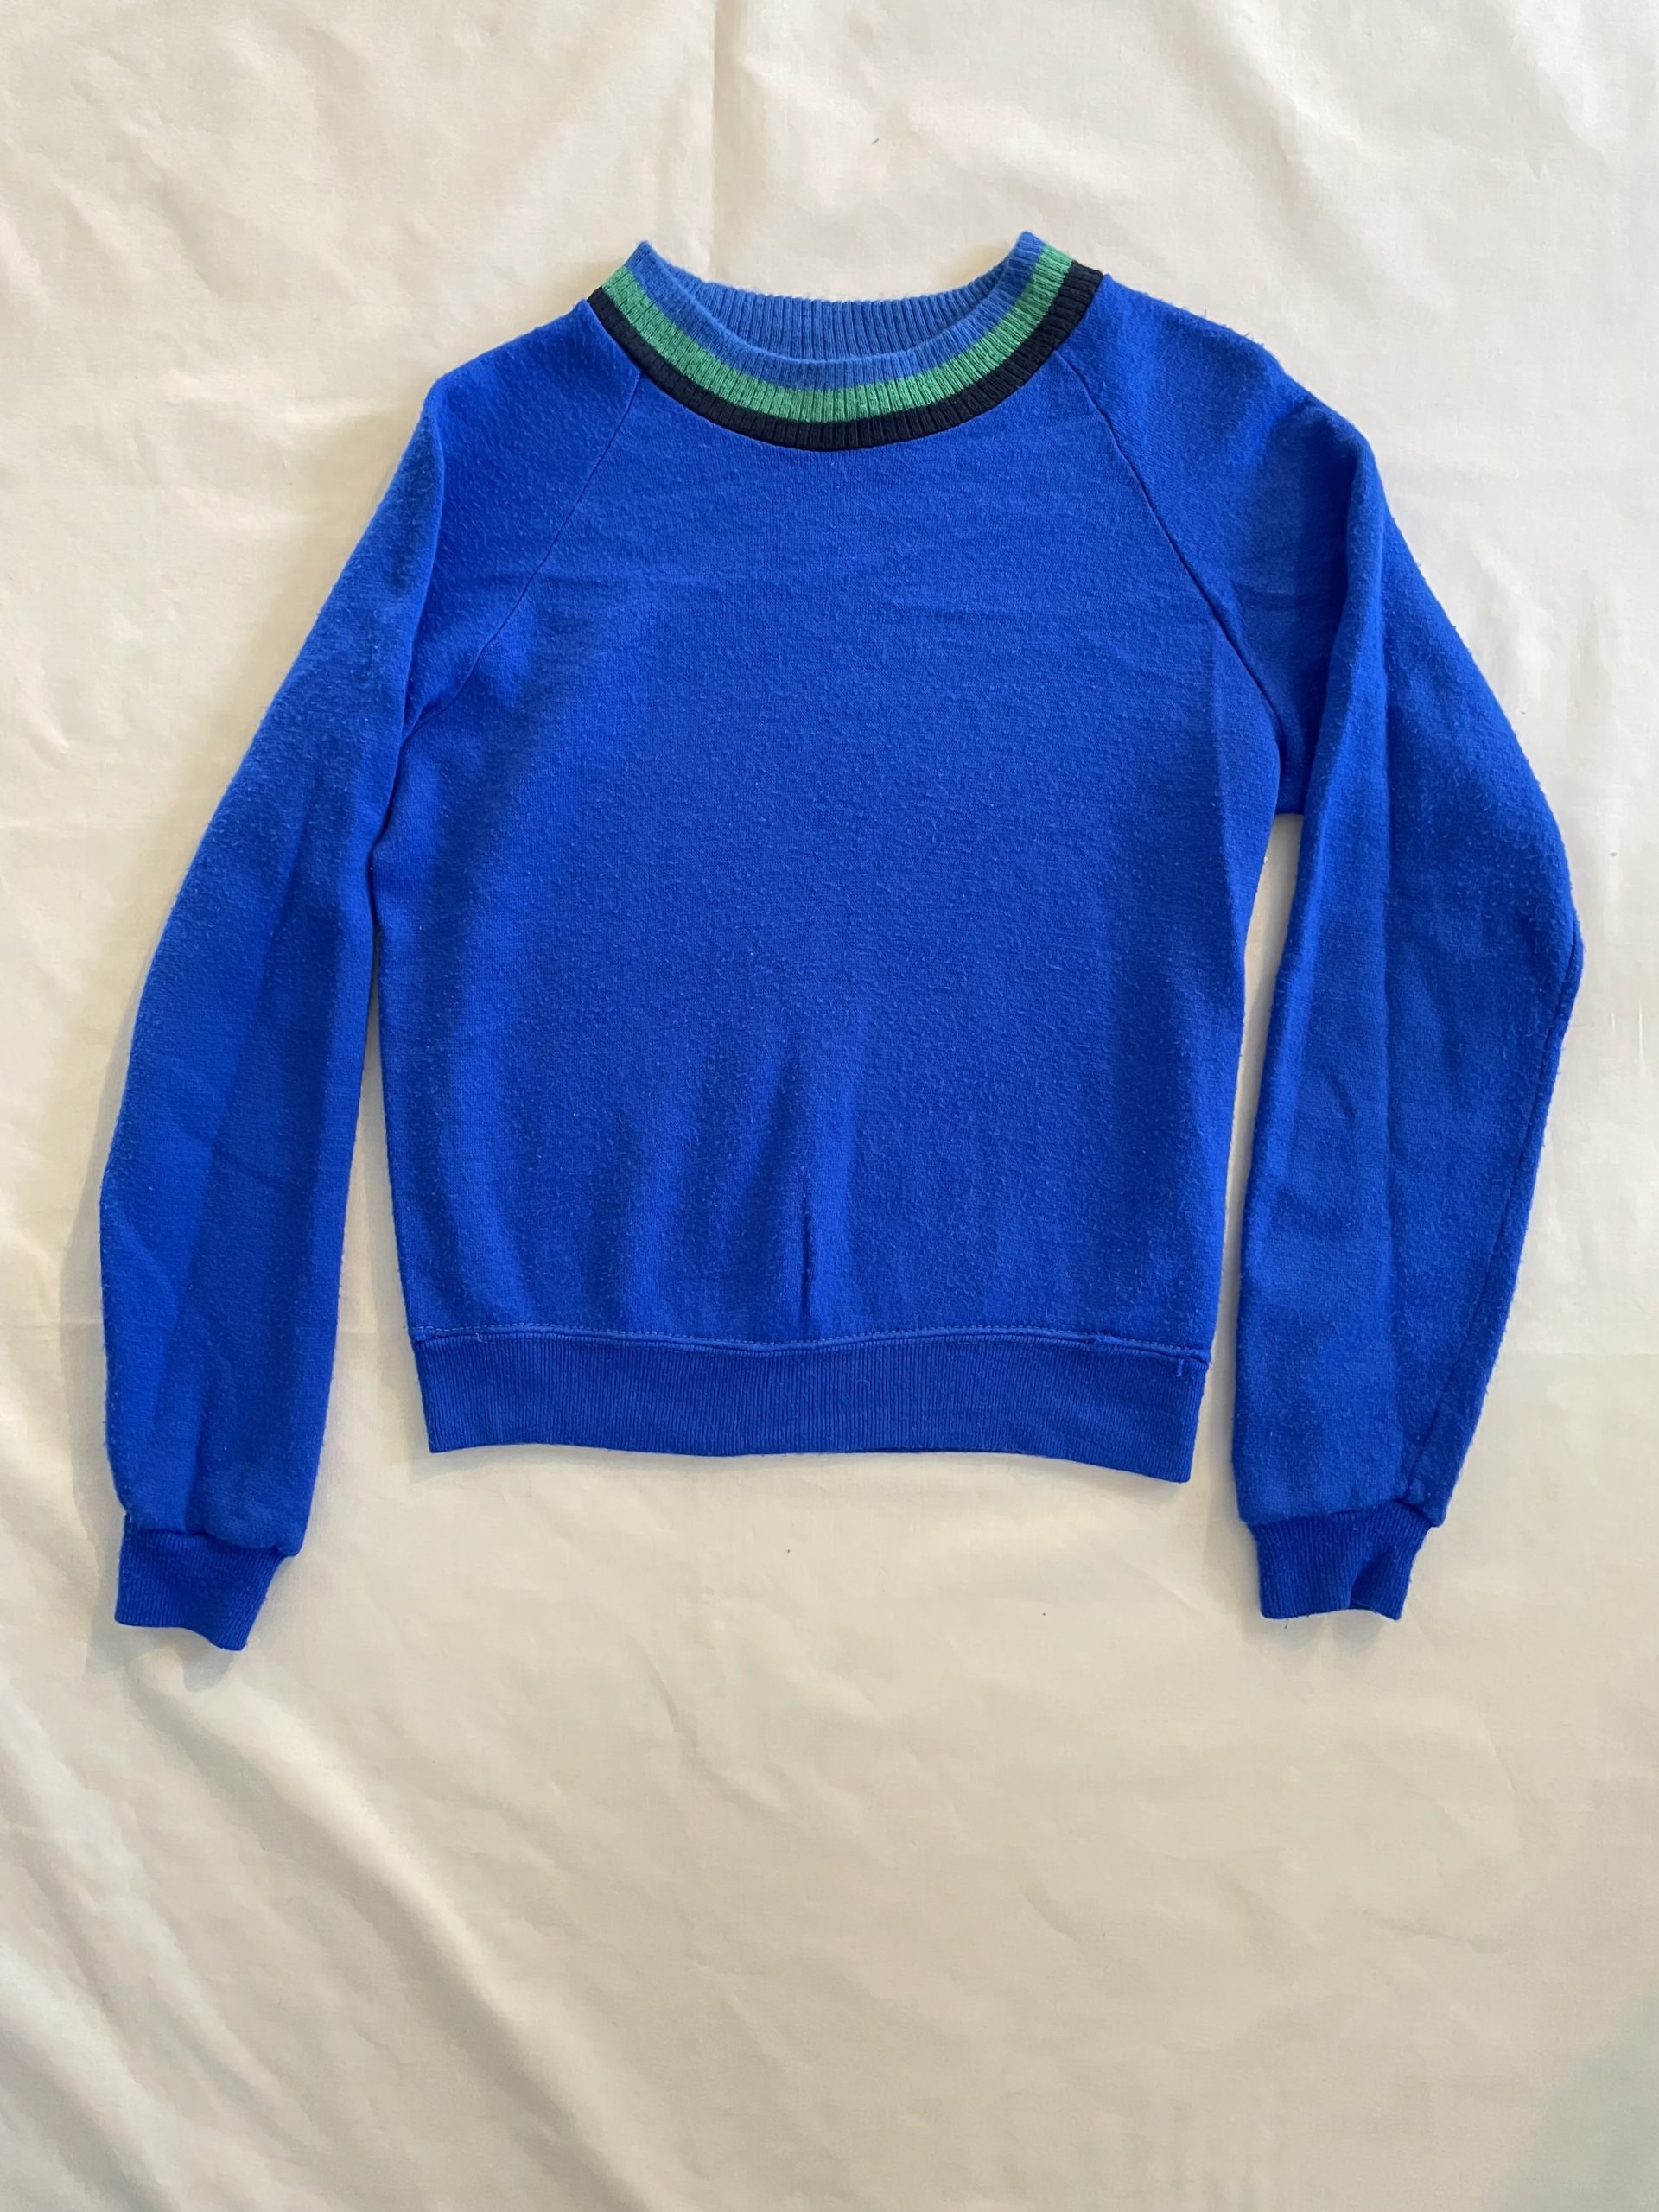 1960/70年代 シアーズ ビンテージ スウェット シャツ 青 60/70s Sears Vintage Sweat Shirt BLUE